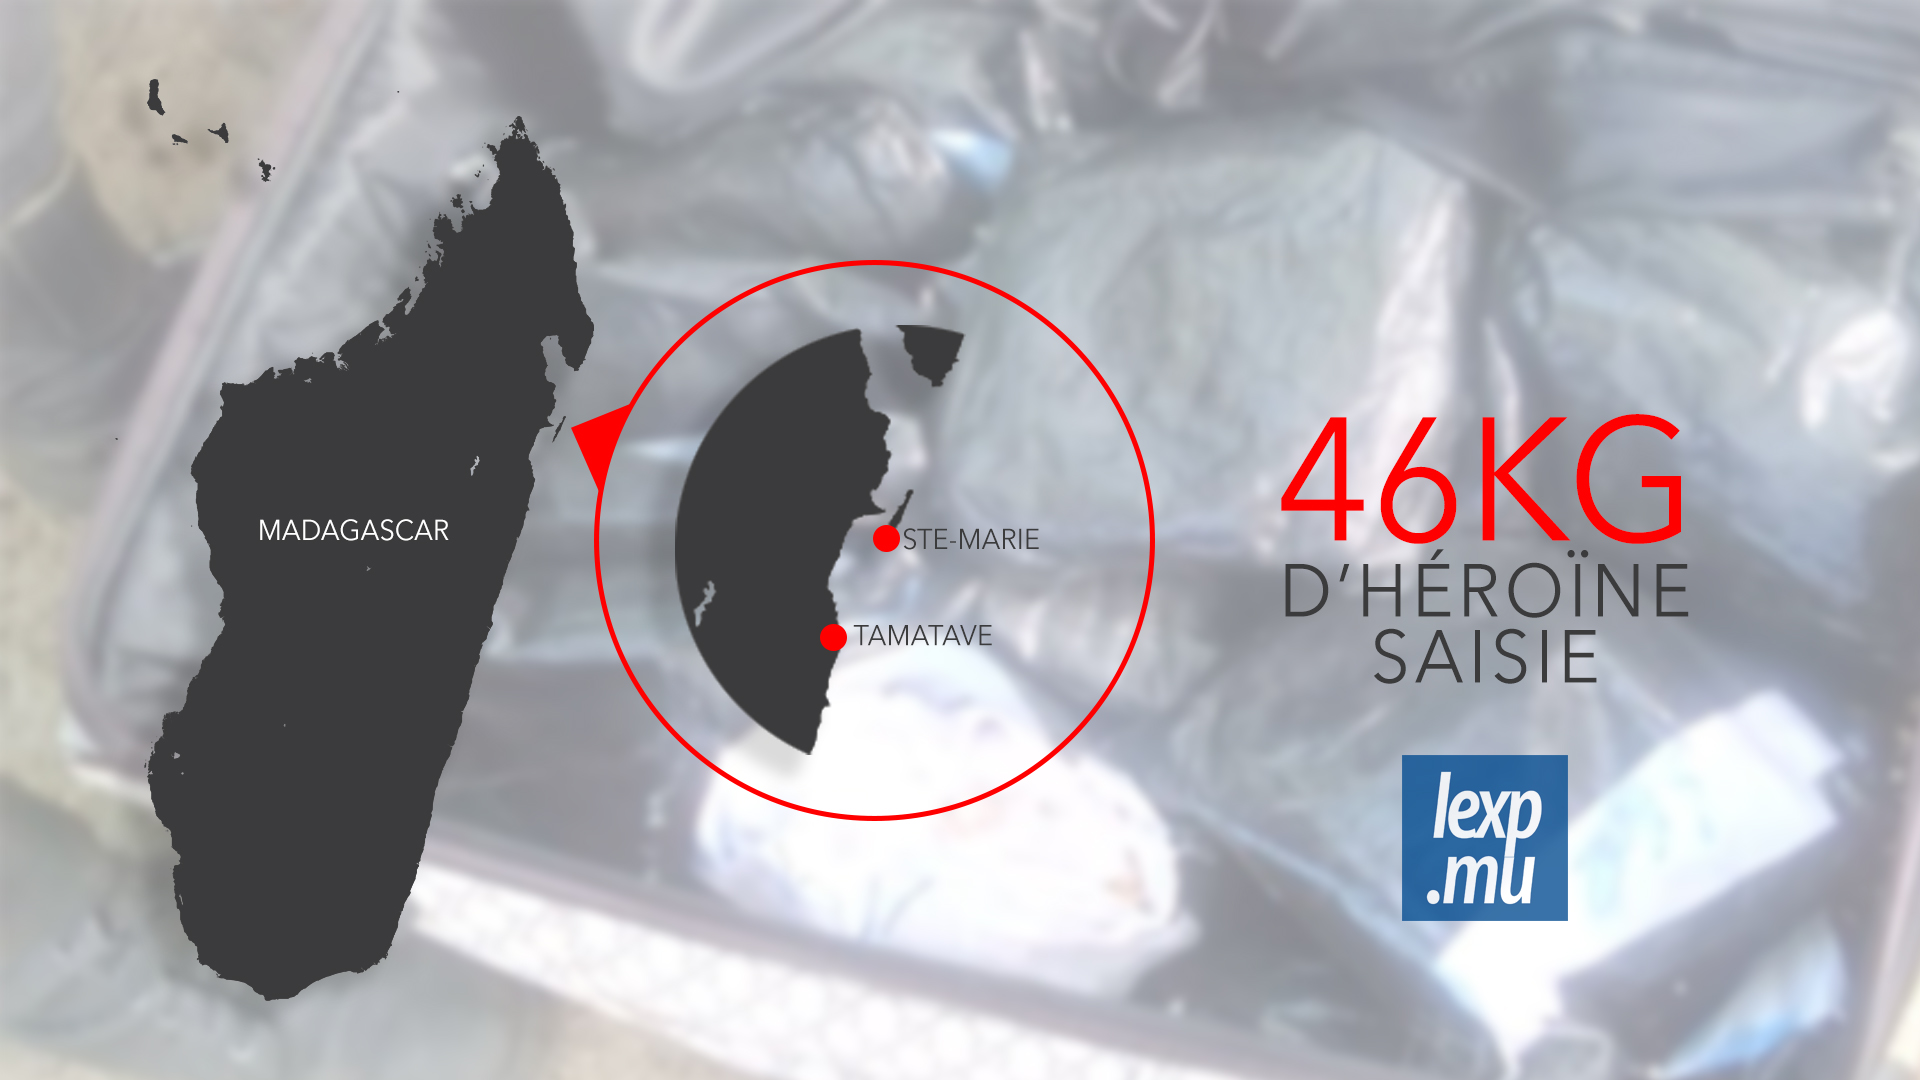 L'affaire des 46kg d'héroïne: voici comment la drogue a été saisie à Madagascar